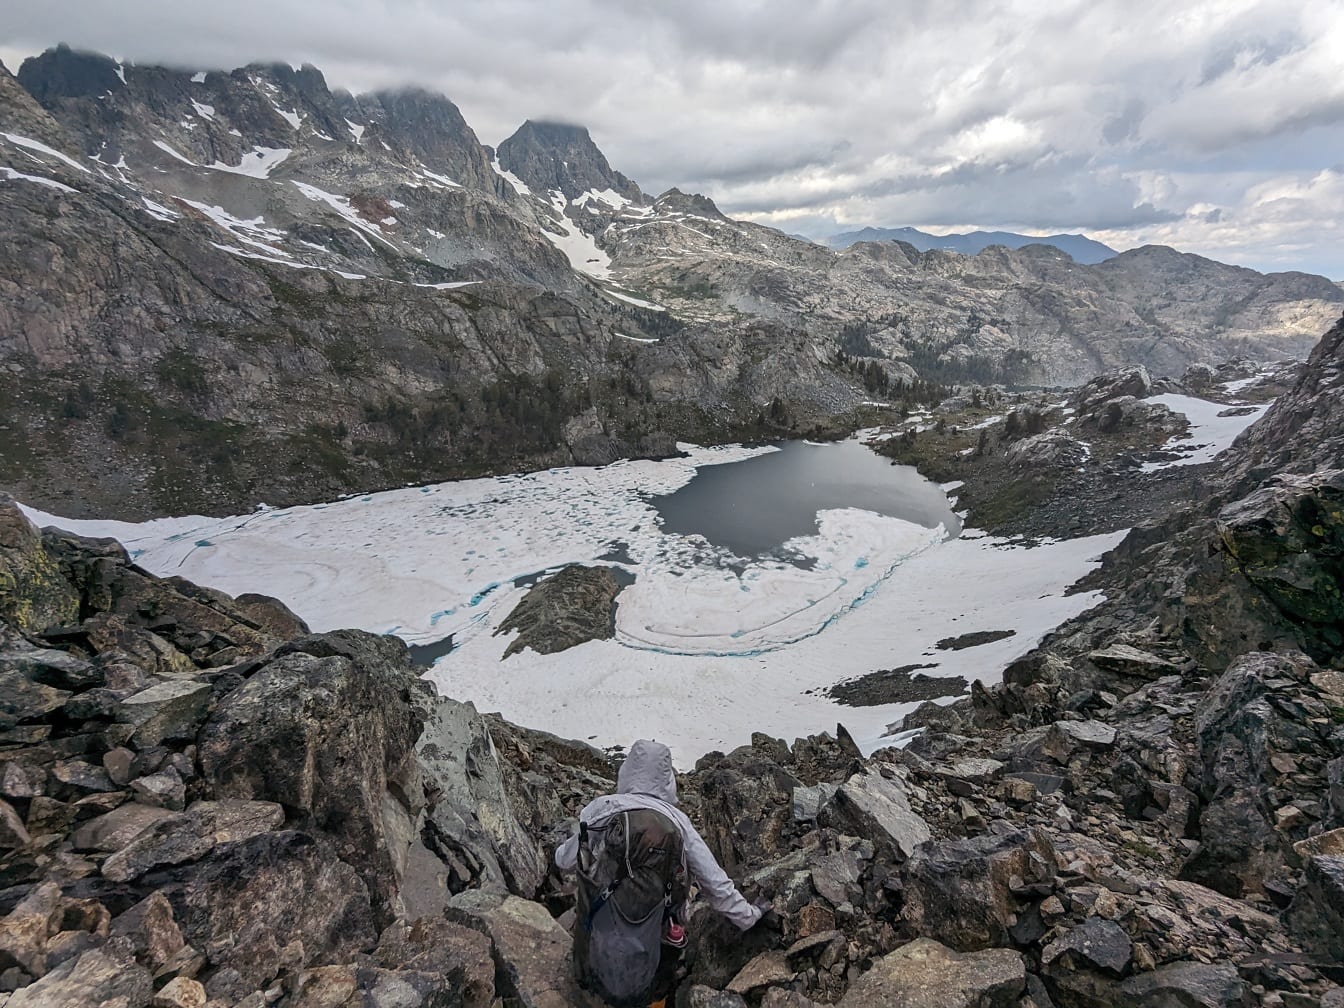 Alpiniste extrême sur des montagnes rocheuses avec lac gelé